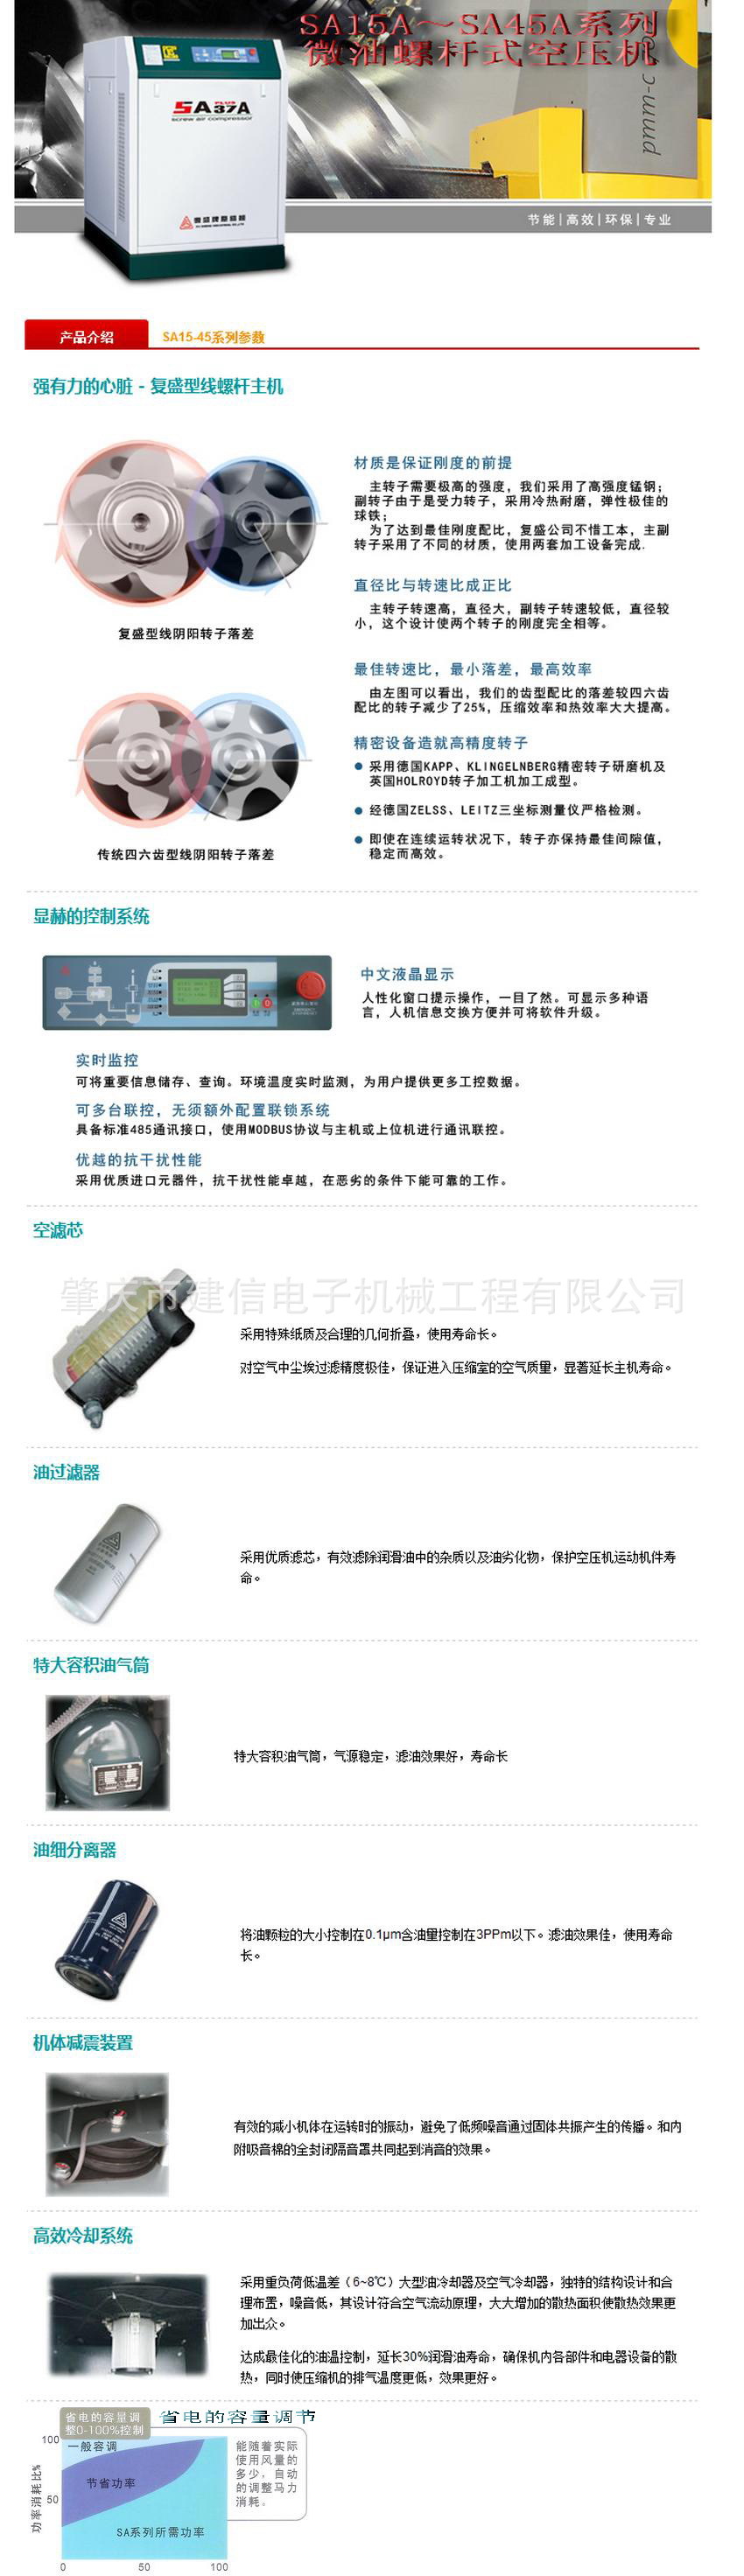 SA15-45系列微油螺桿式空壓機-復盛中文官方網站